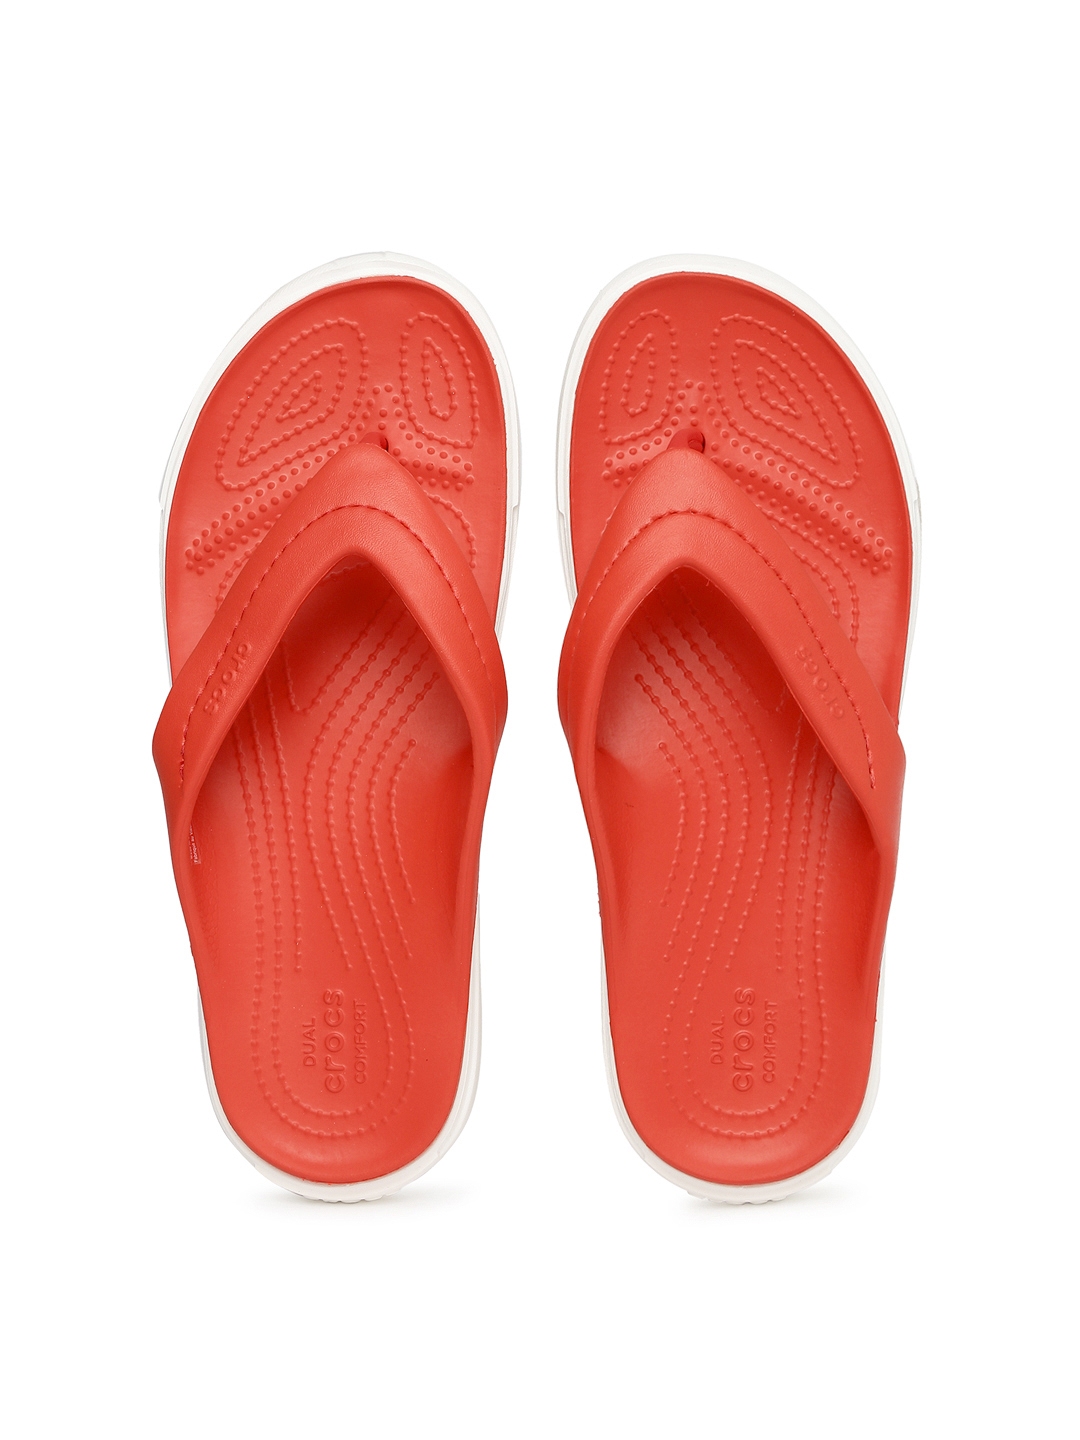 crocs thong slippers